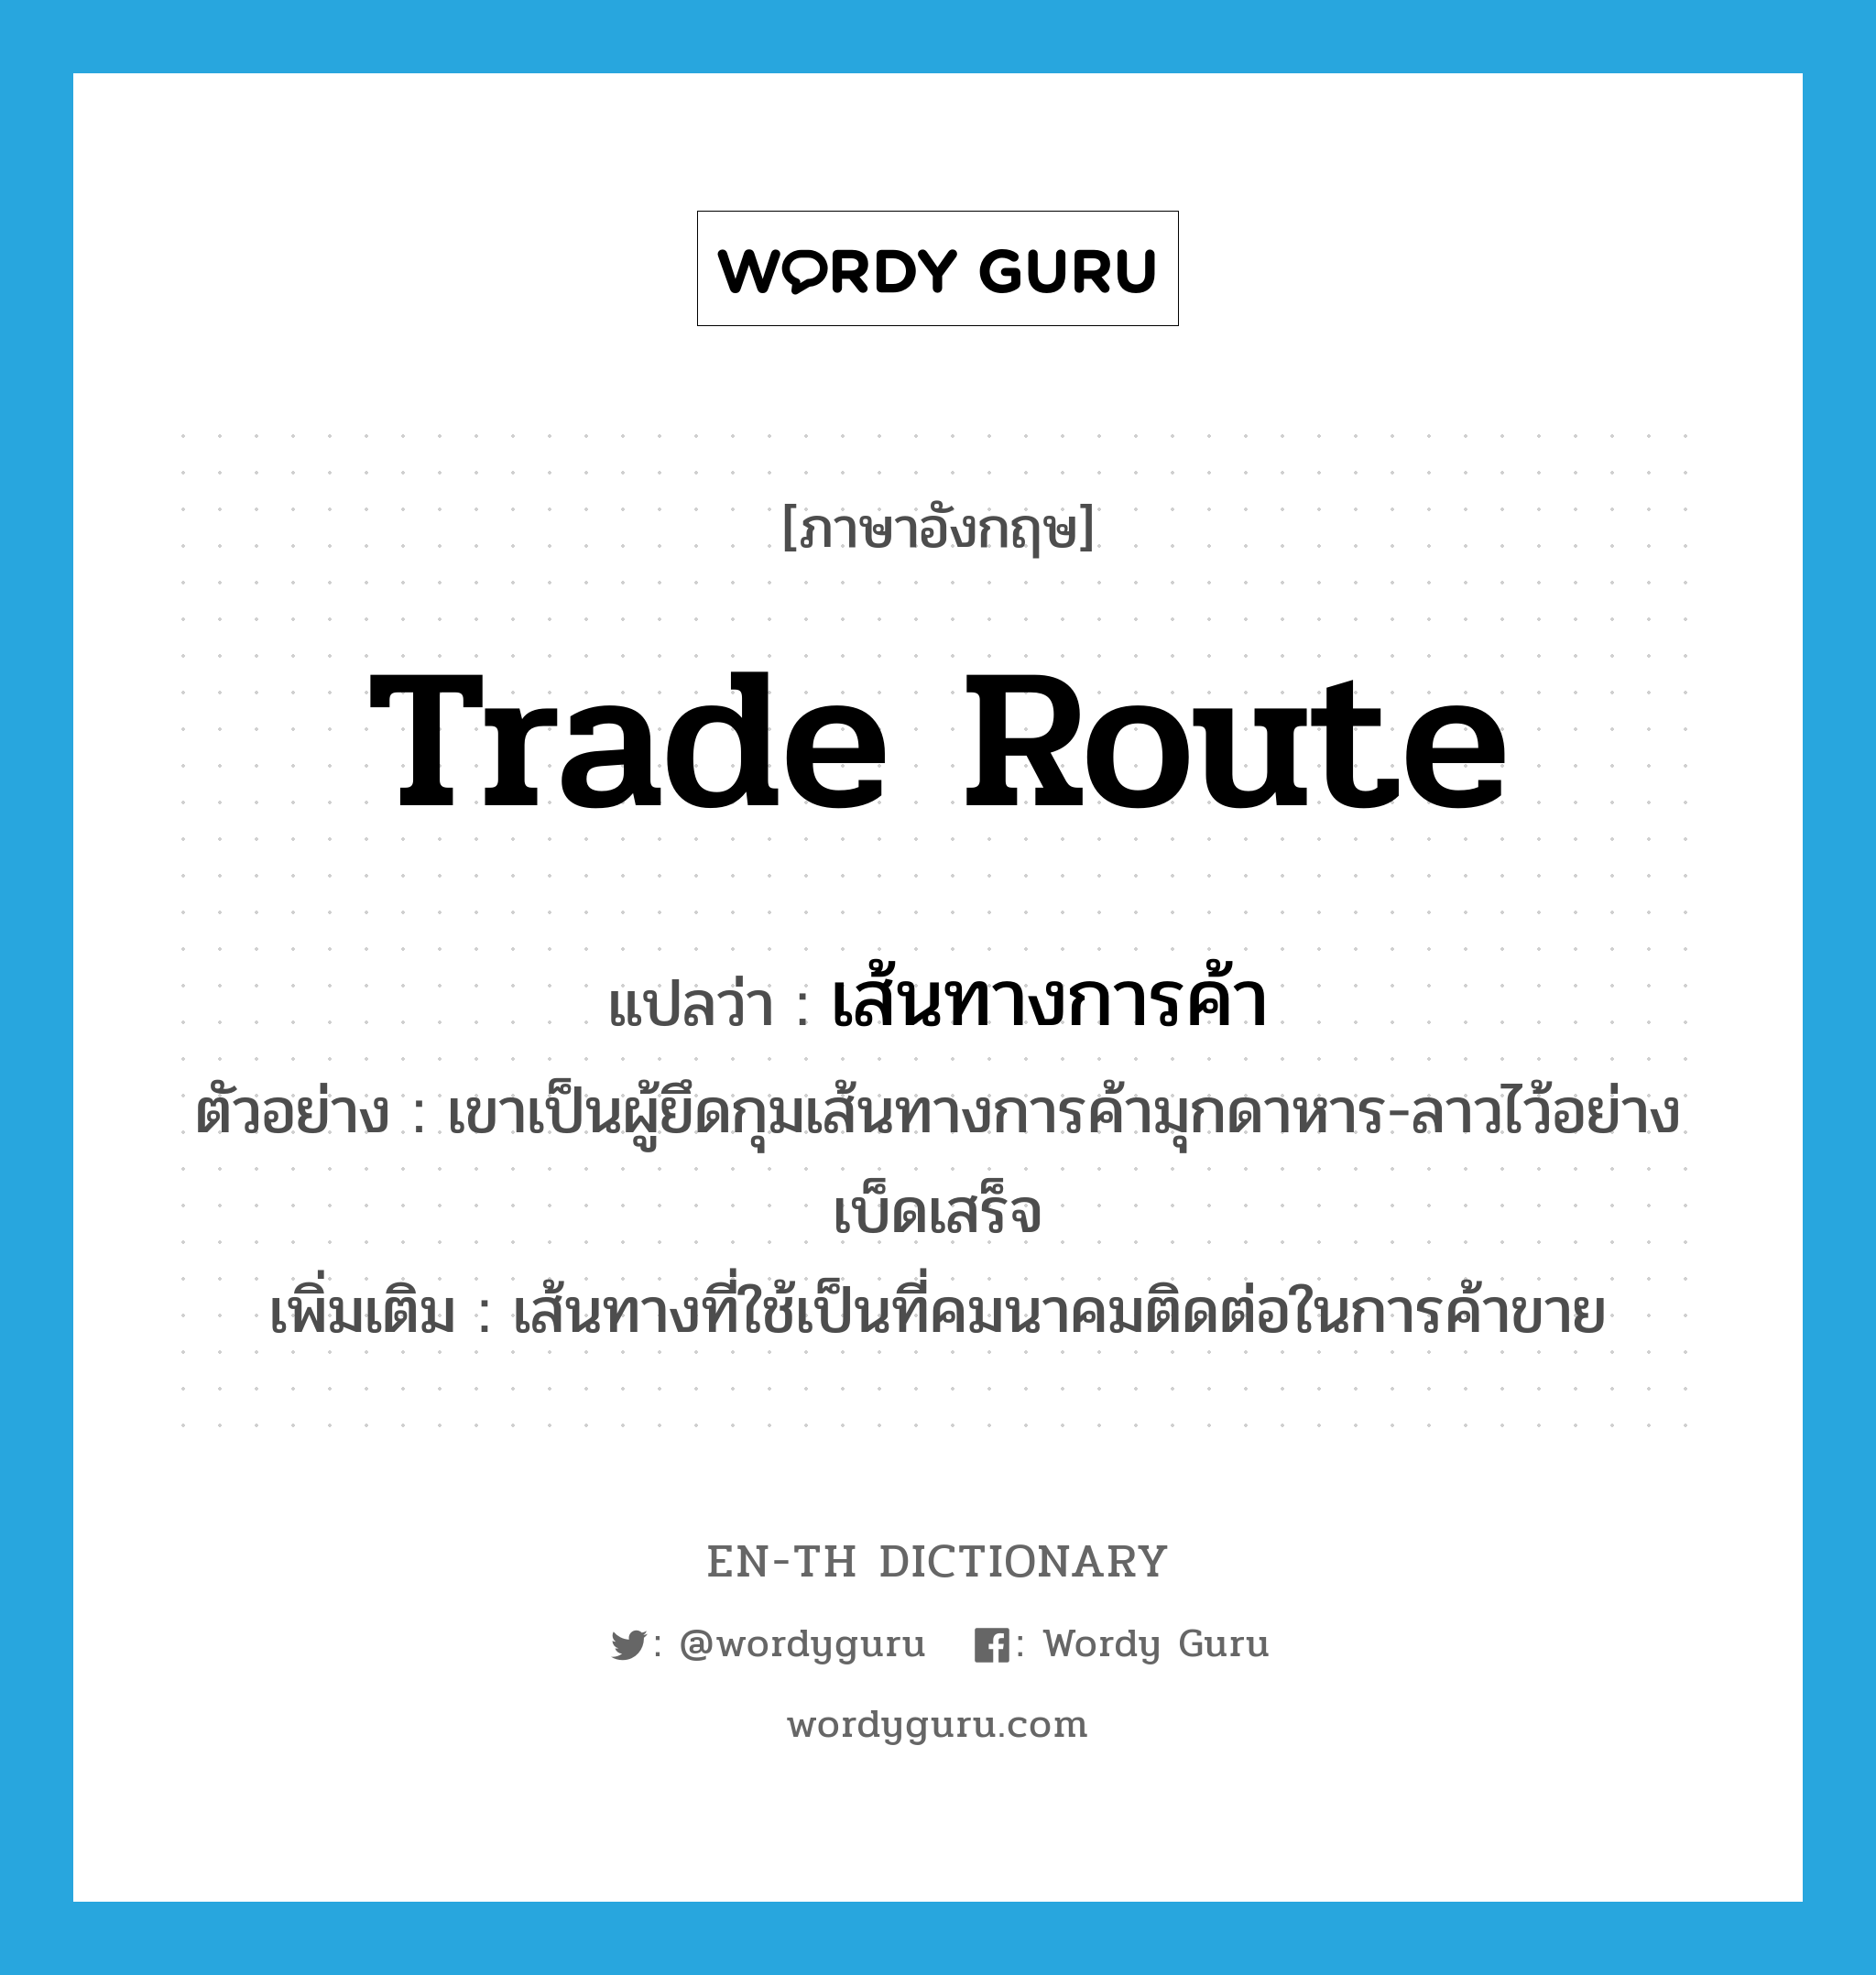 trade route แปลว่า?, คำศัพท์ภาษาอังกฤษ trade route แปลว่า เส้นทางการค้า ประเภท N ตัวอย่าง เขาเป็นผู้ยึดกุมเส้นทางการค้ามุกดาหาร-ลาวไว้อย่างเบ็ดเสร็จ เพิ่มเติม เส้นทางที่ใช้เป็นที่คมนาคมติดต่อในการค้าขาย หมวด N